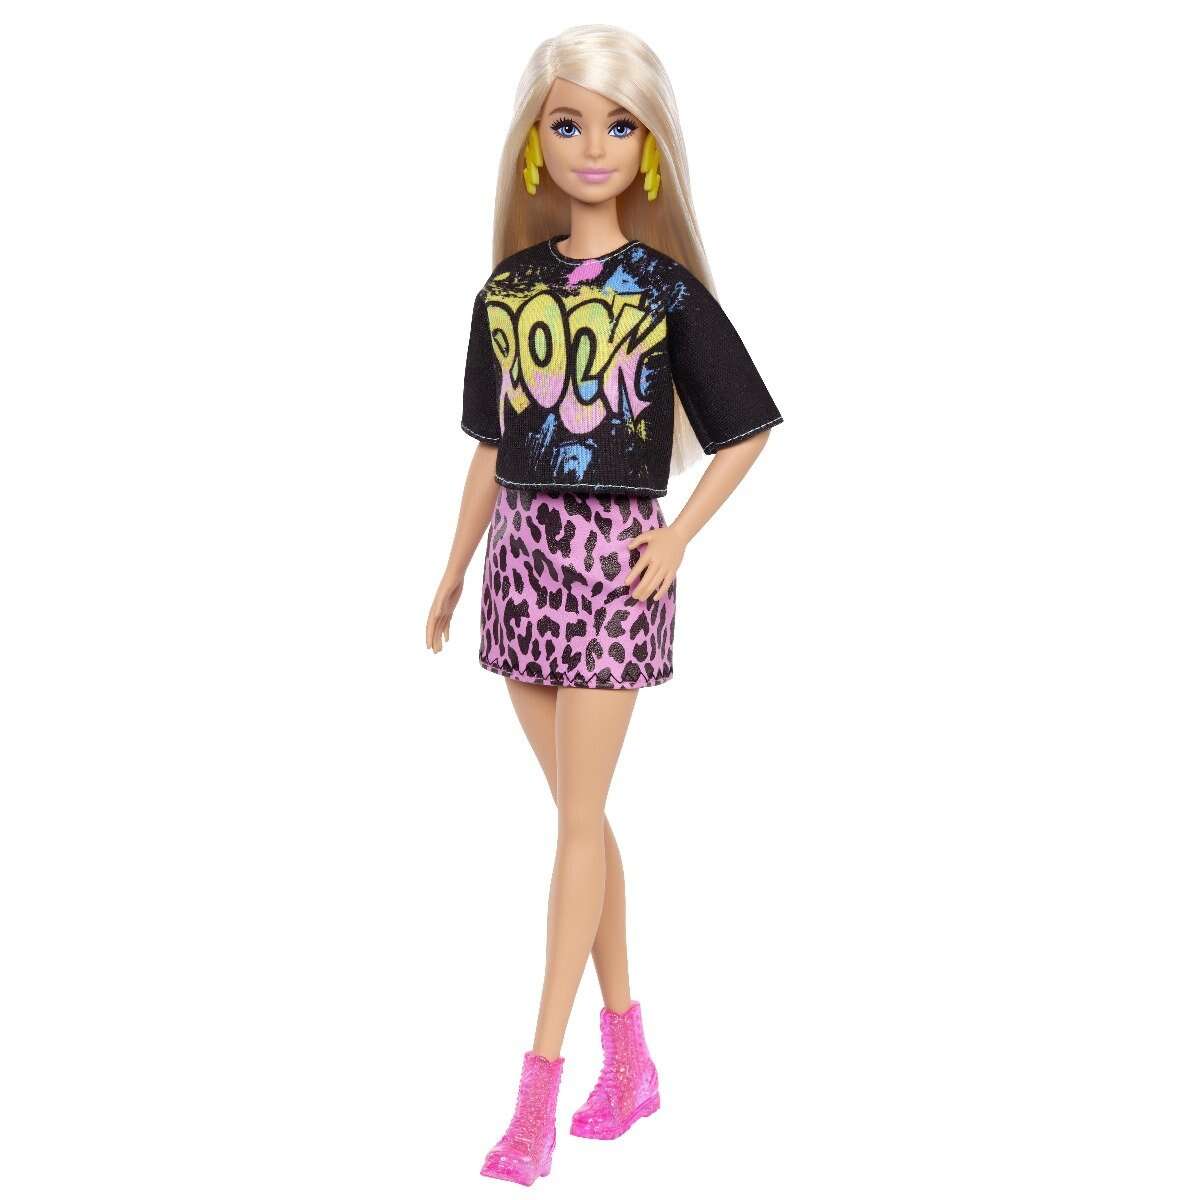 Papusa Barbie Fashionistas, GRB47